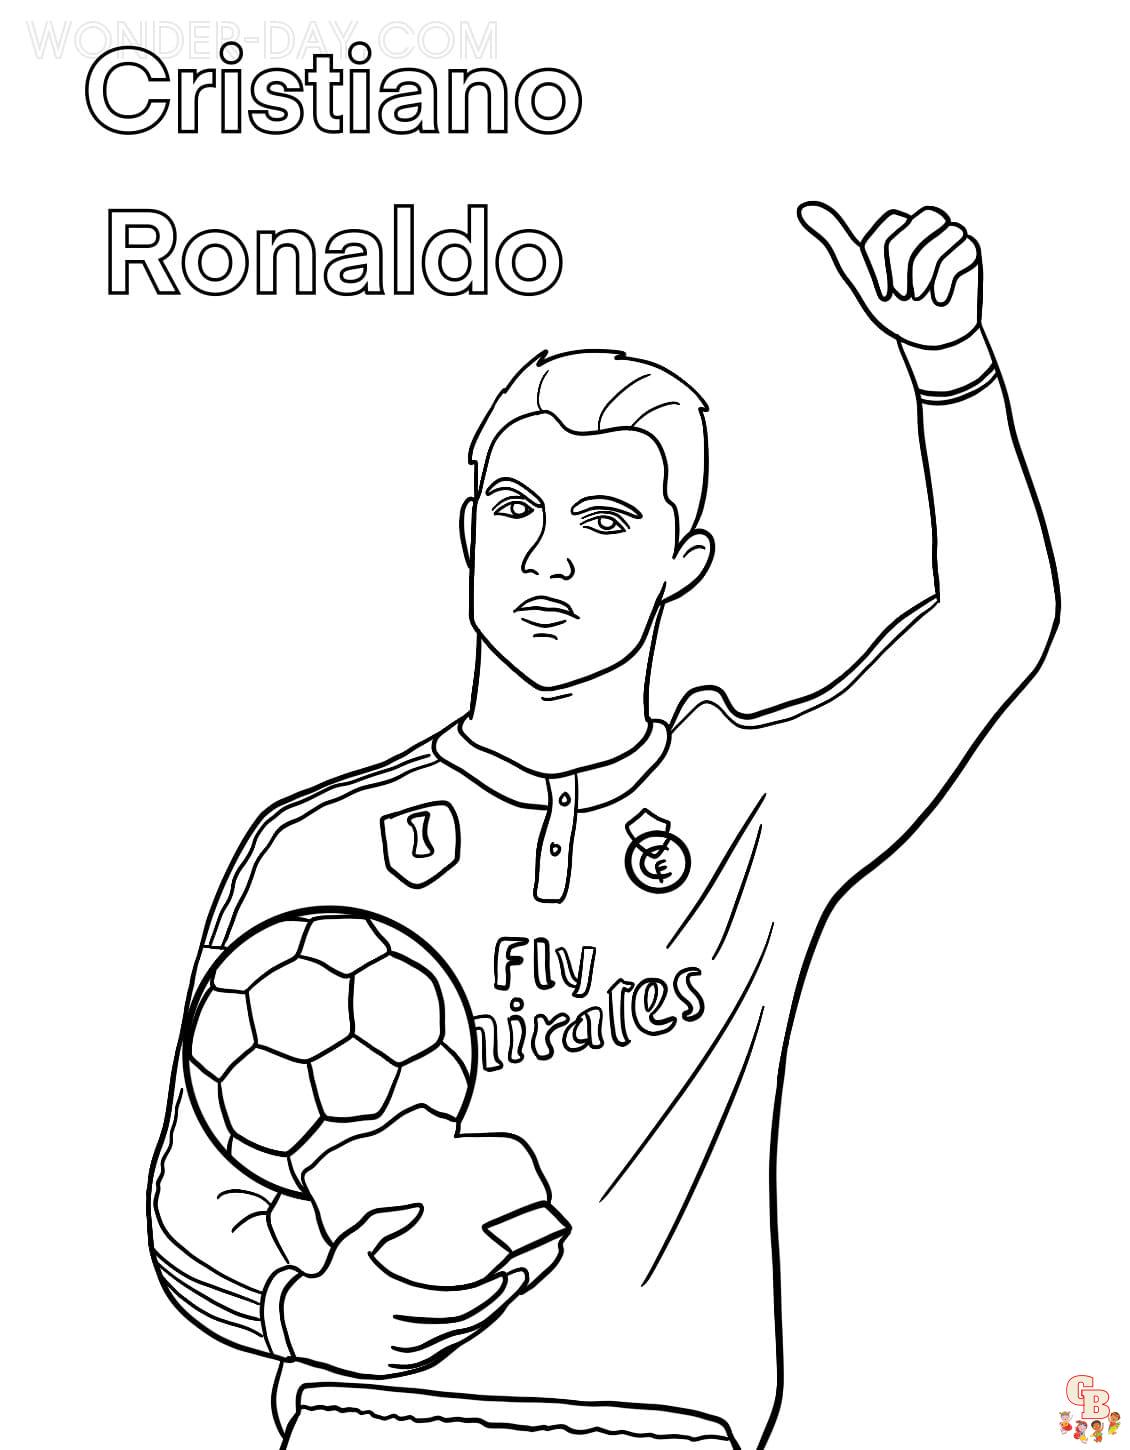 Cristiano Ronaldo do koloru